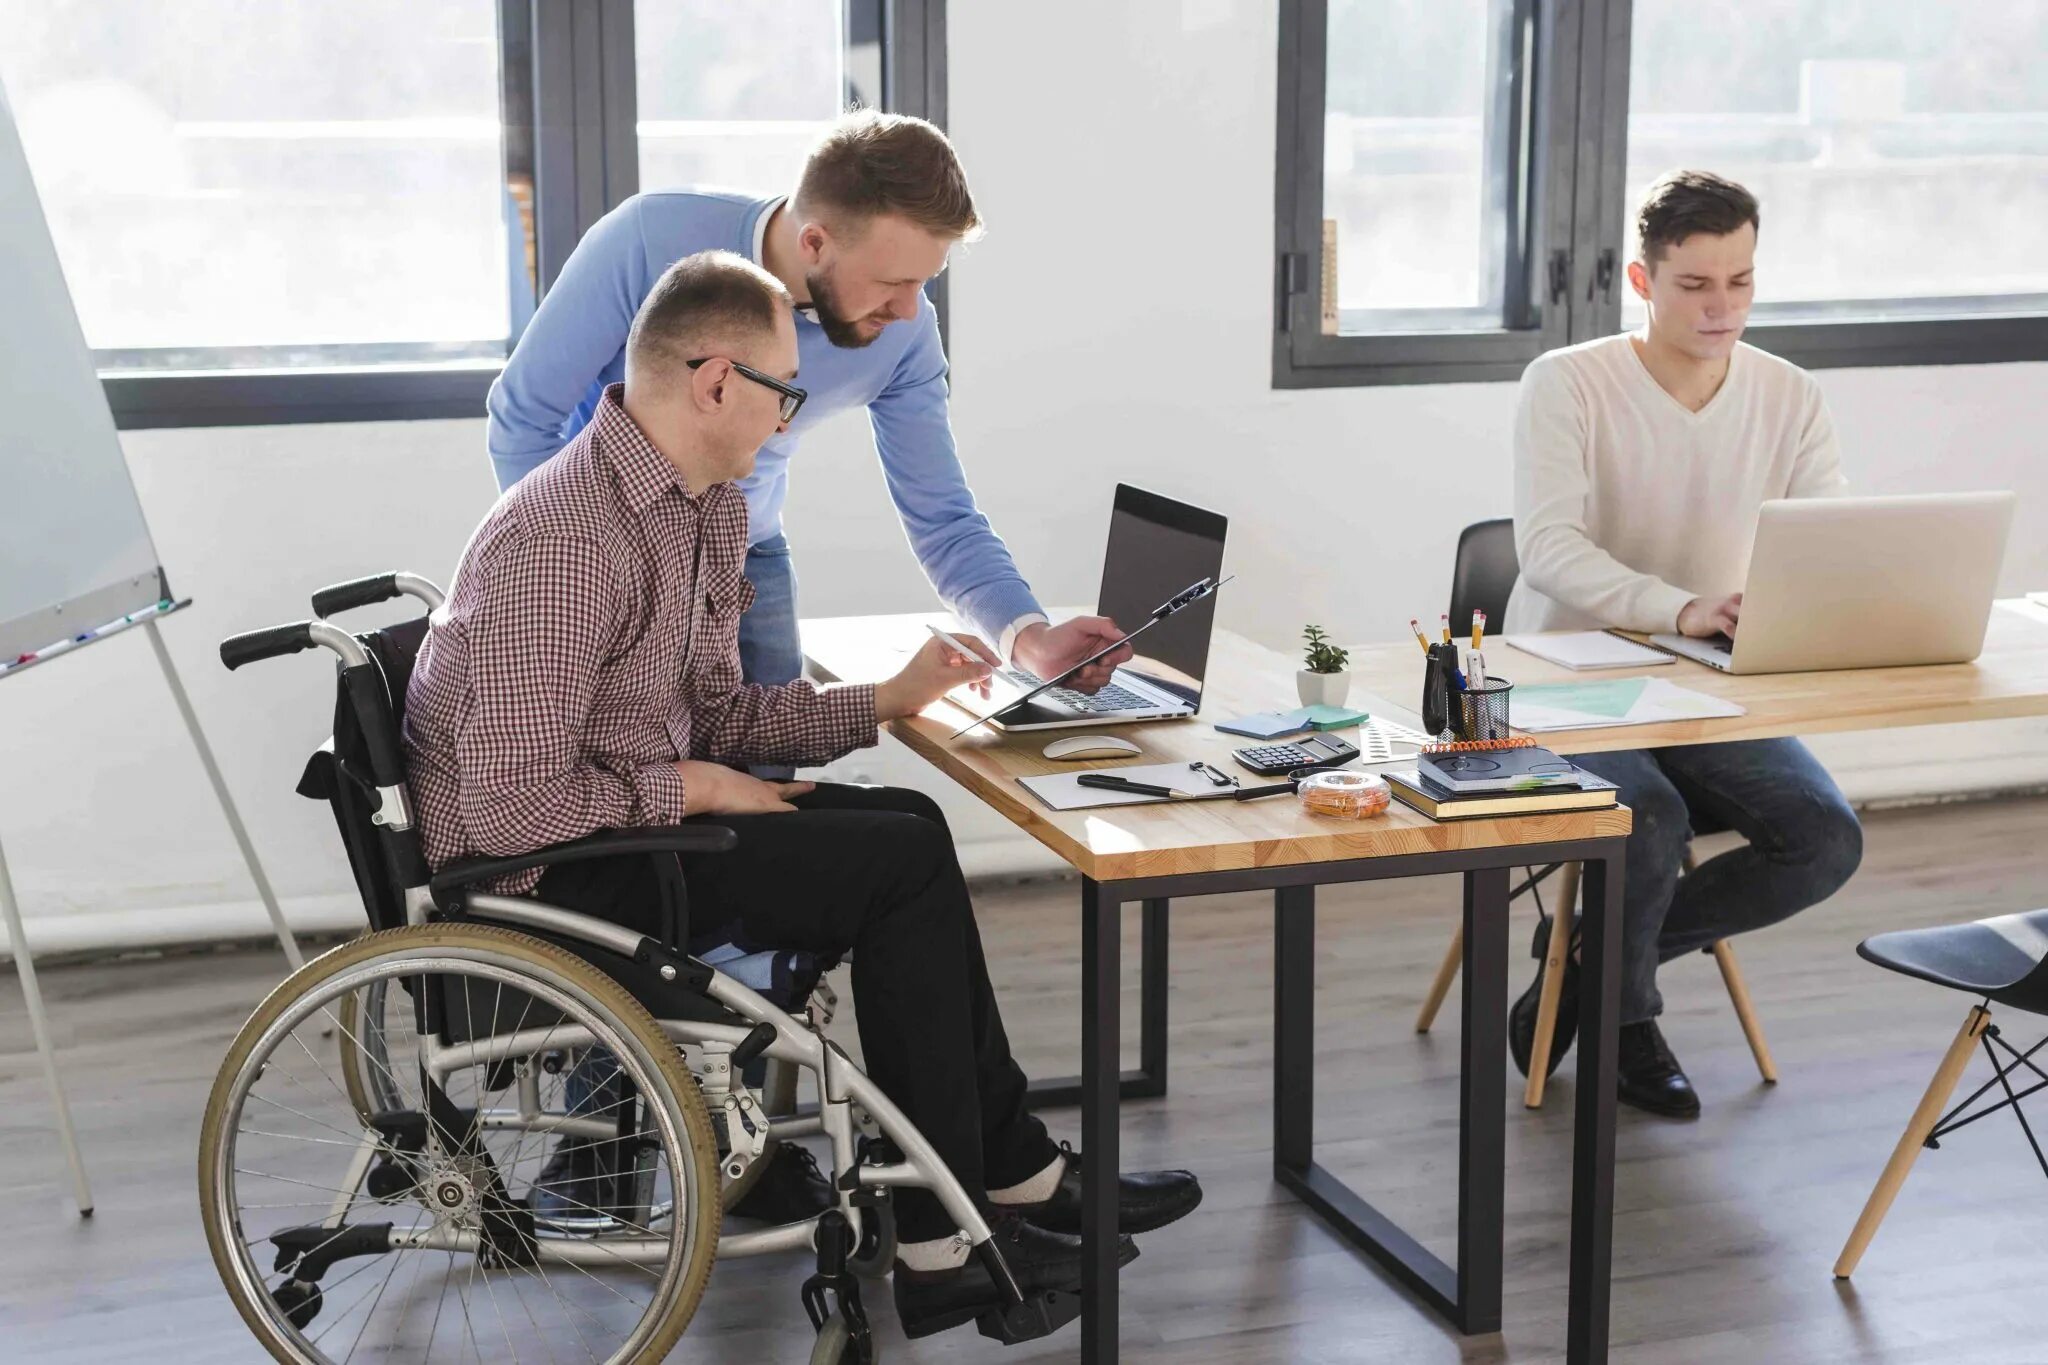 Круглый стол инклюзия. Профориентация людей с инвалидностью. Бизнес для самозанятых идеи. Студенты инвалиды и преподаватель. Самозанятые инвалиды 1 группы